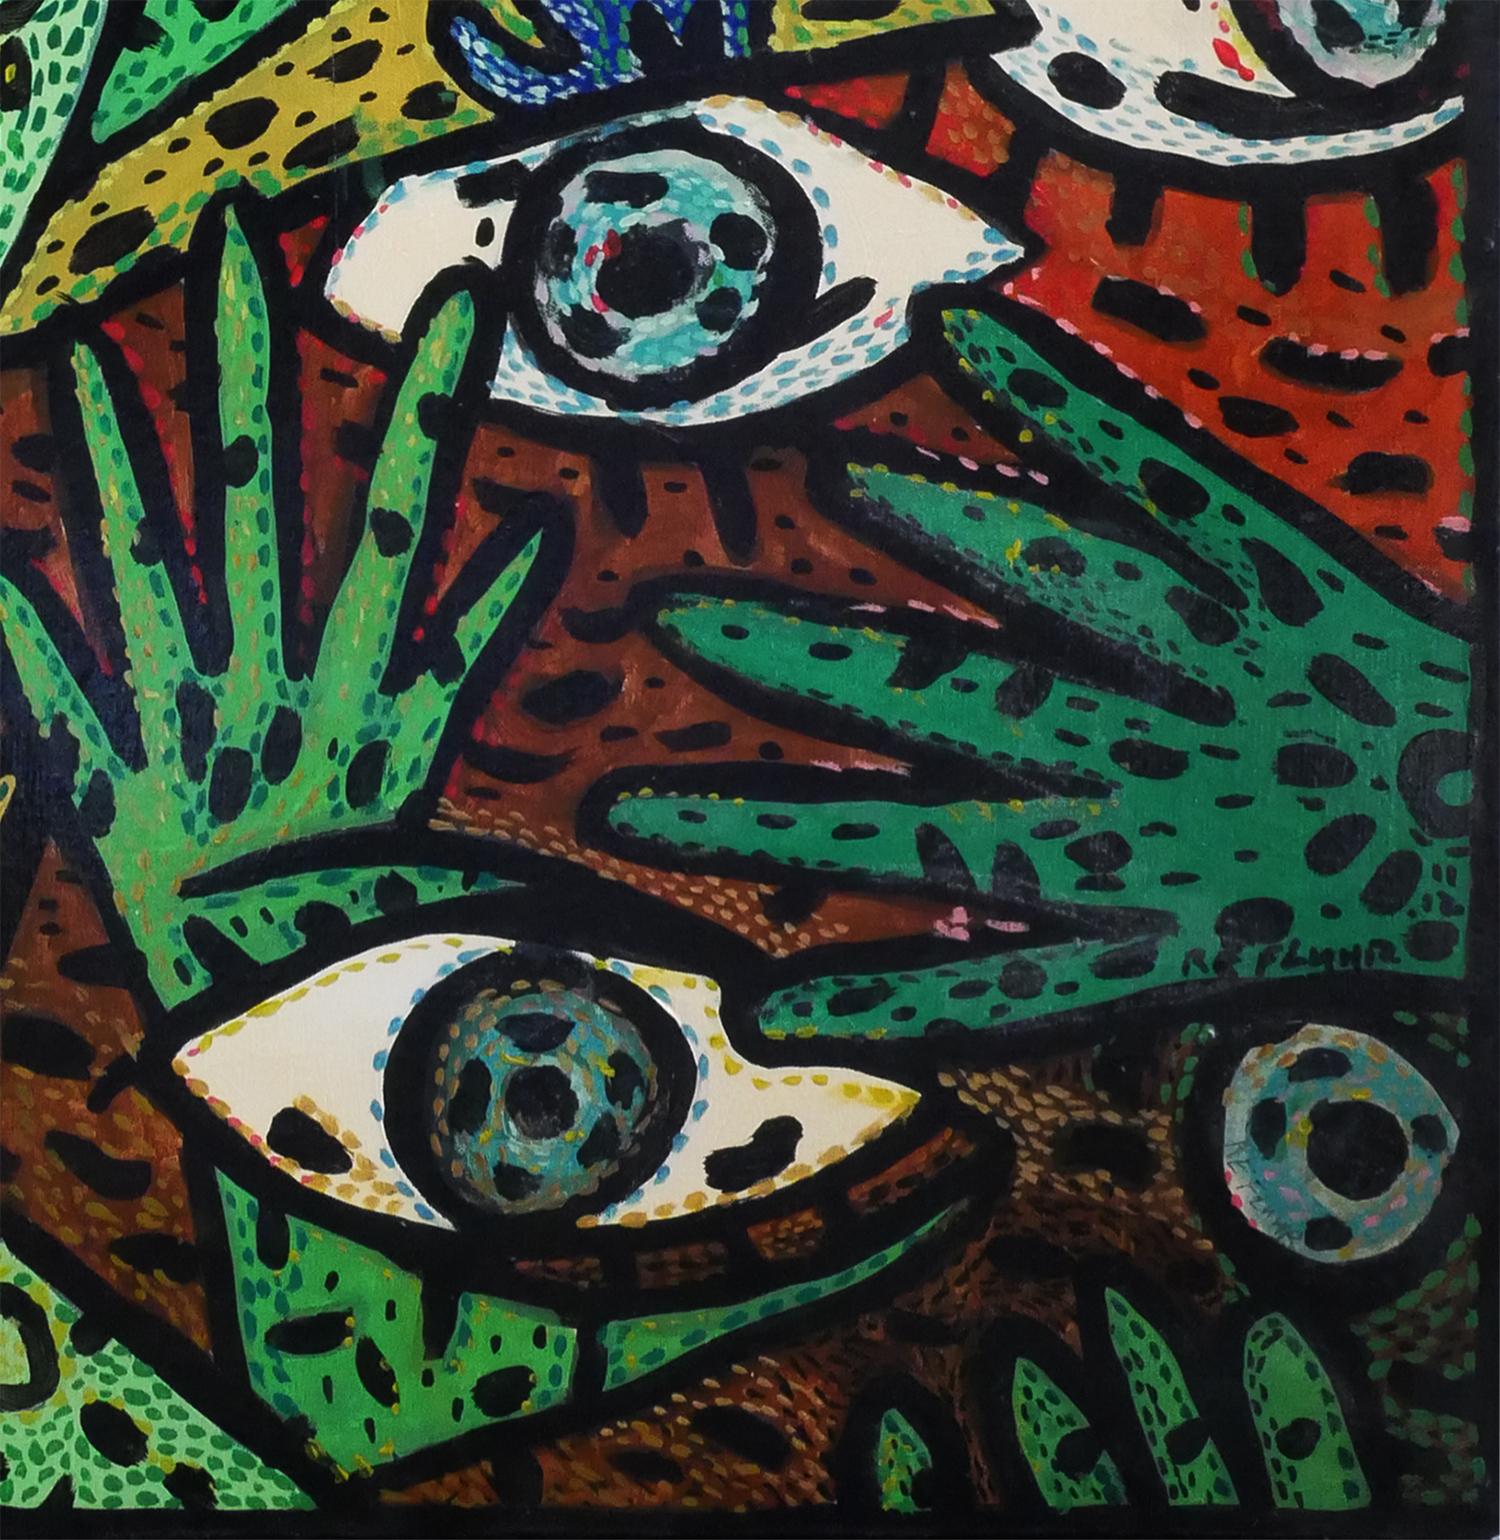 Grünes und rotes abstraktes zeitgenössisches Gemälde des Künstlers Richard Fluhr aus Houston, TX. Dieses Gemälde zeigt abstrakte blaue Augen vor einem Hintergrund aus abstrahierten blauen, orangefarbenen und grünen Formen, die an Hände und